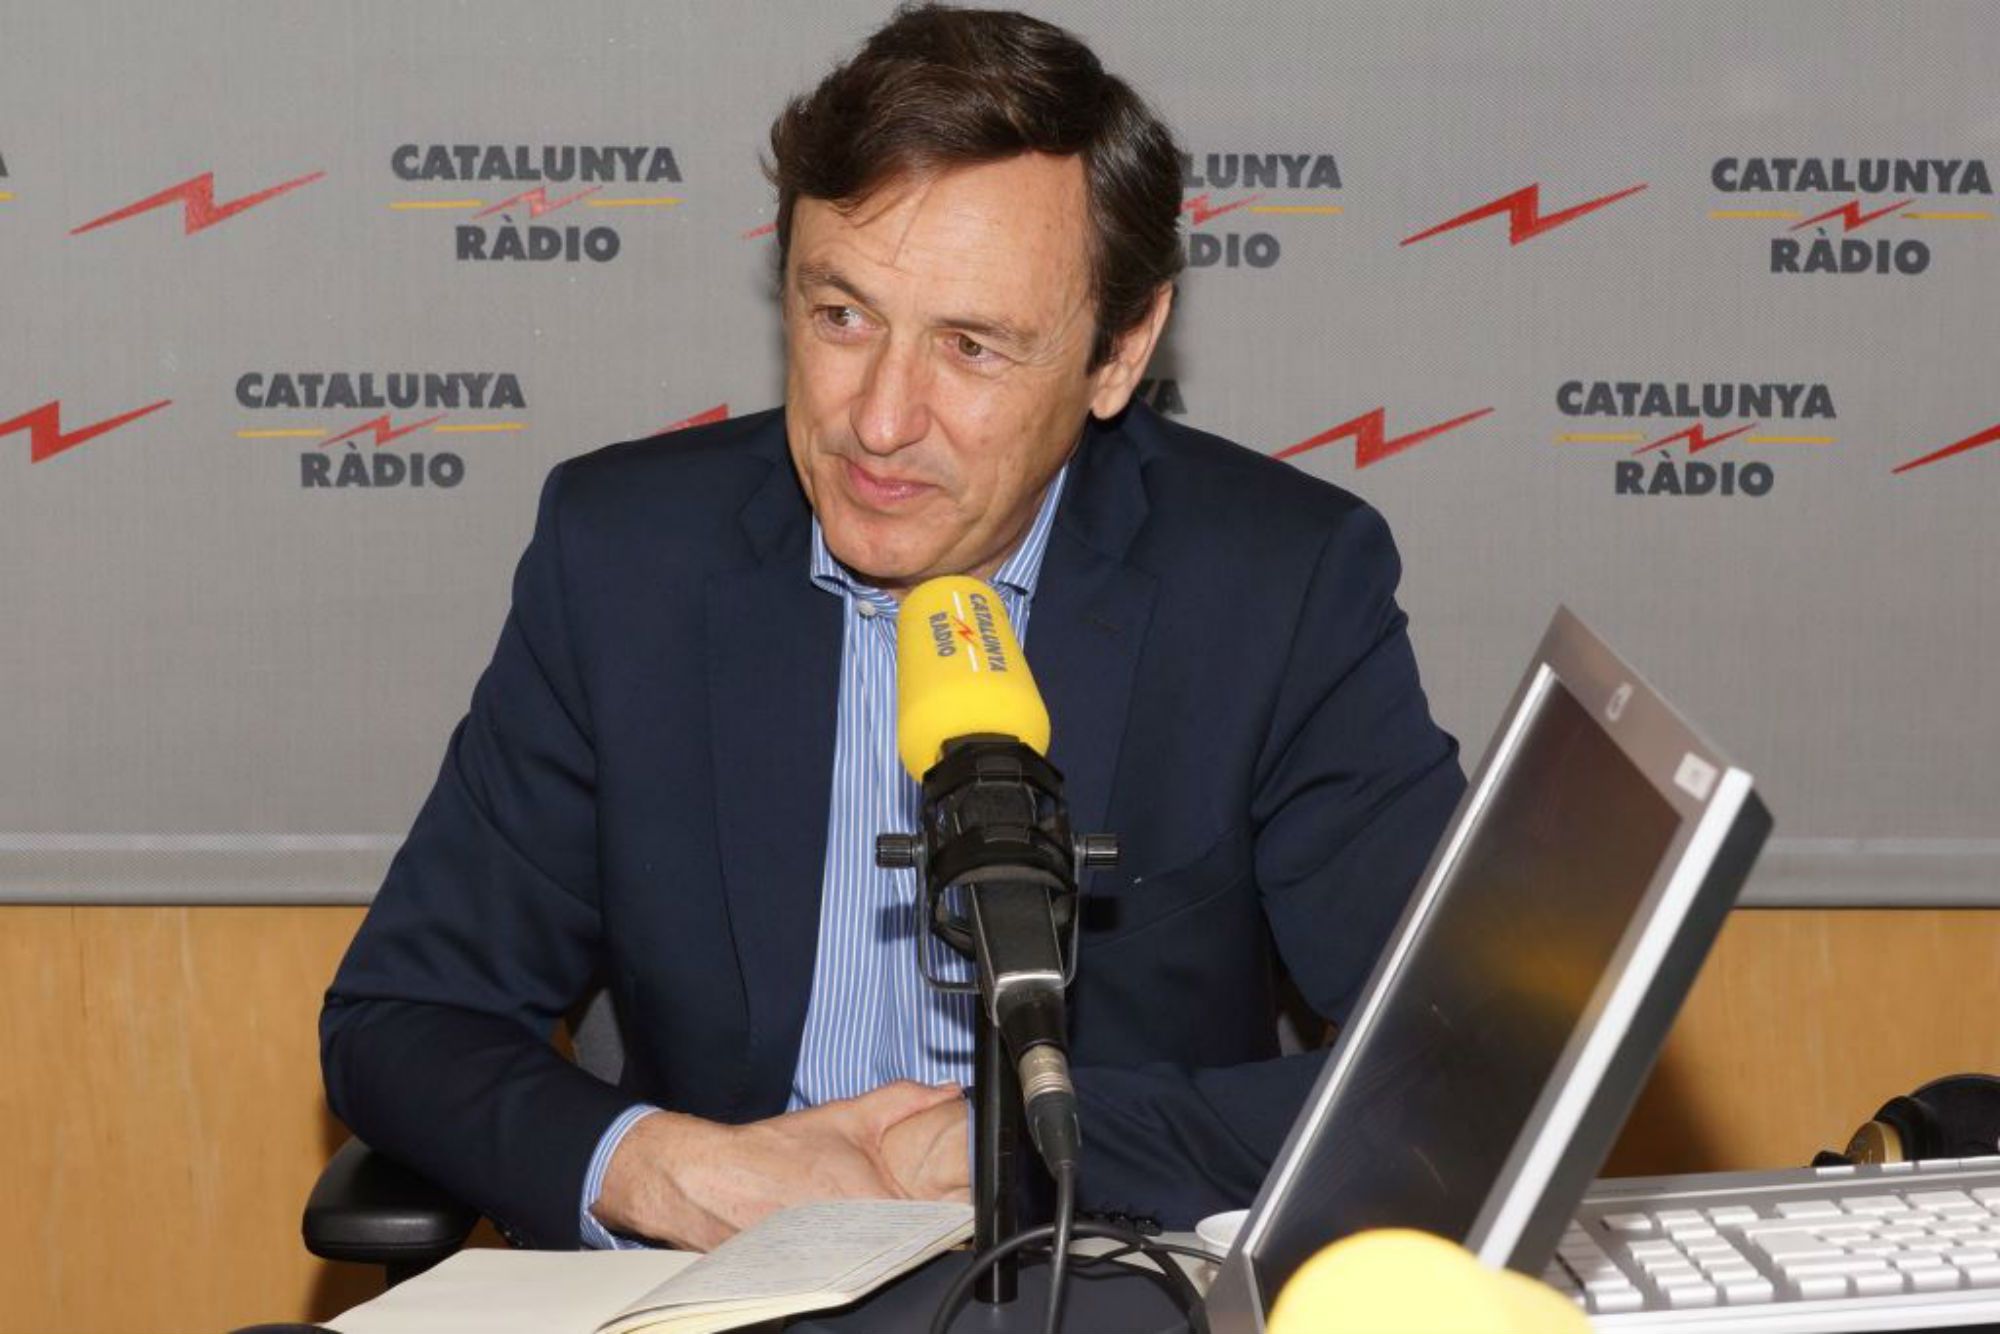 El PP promete eliminar los peajes de las autopistas catalanas